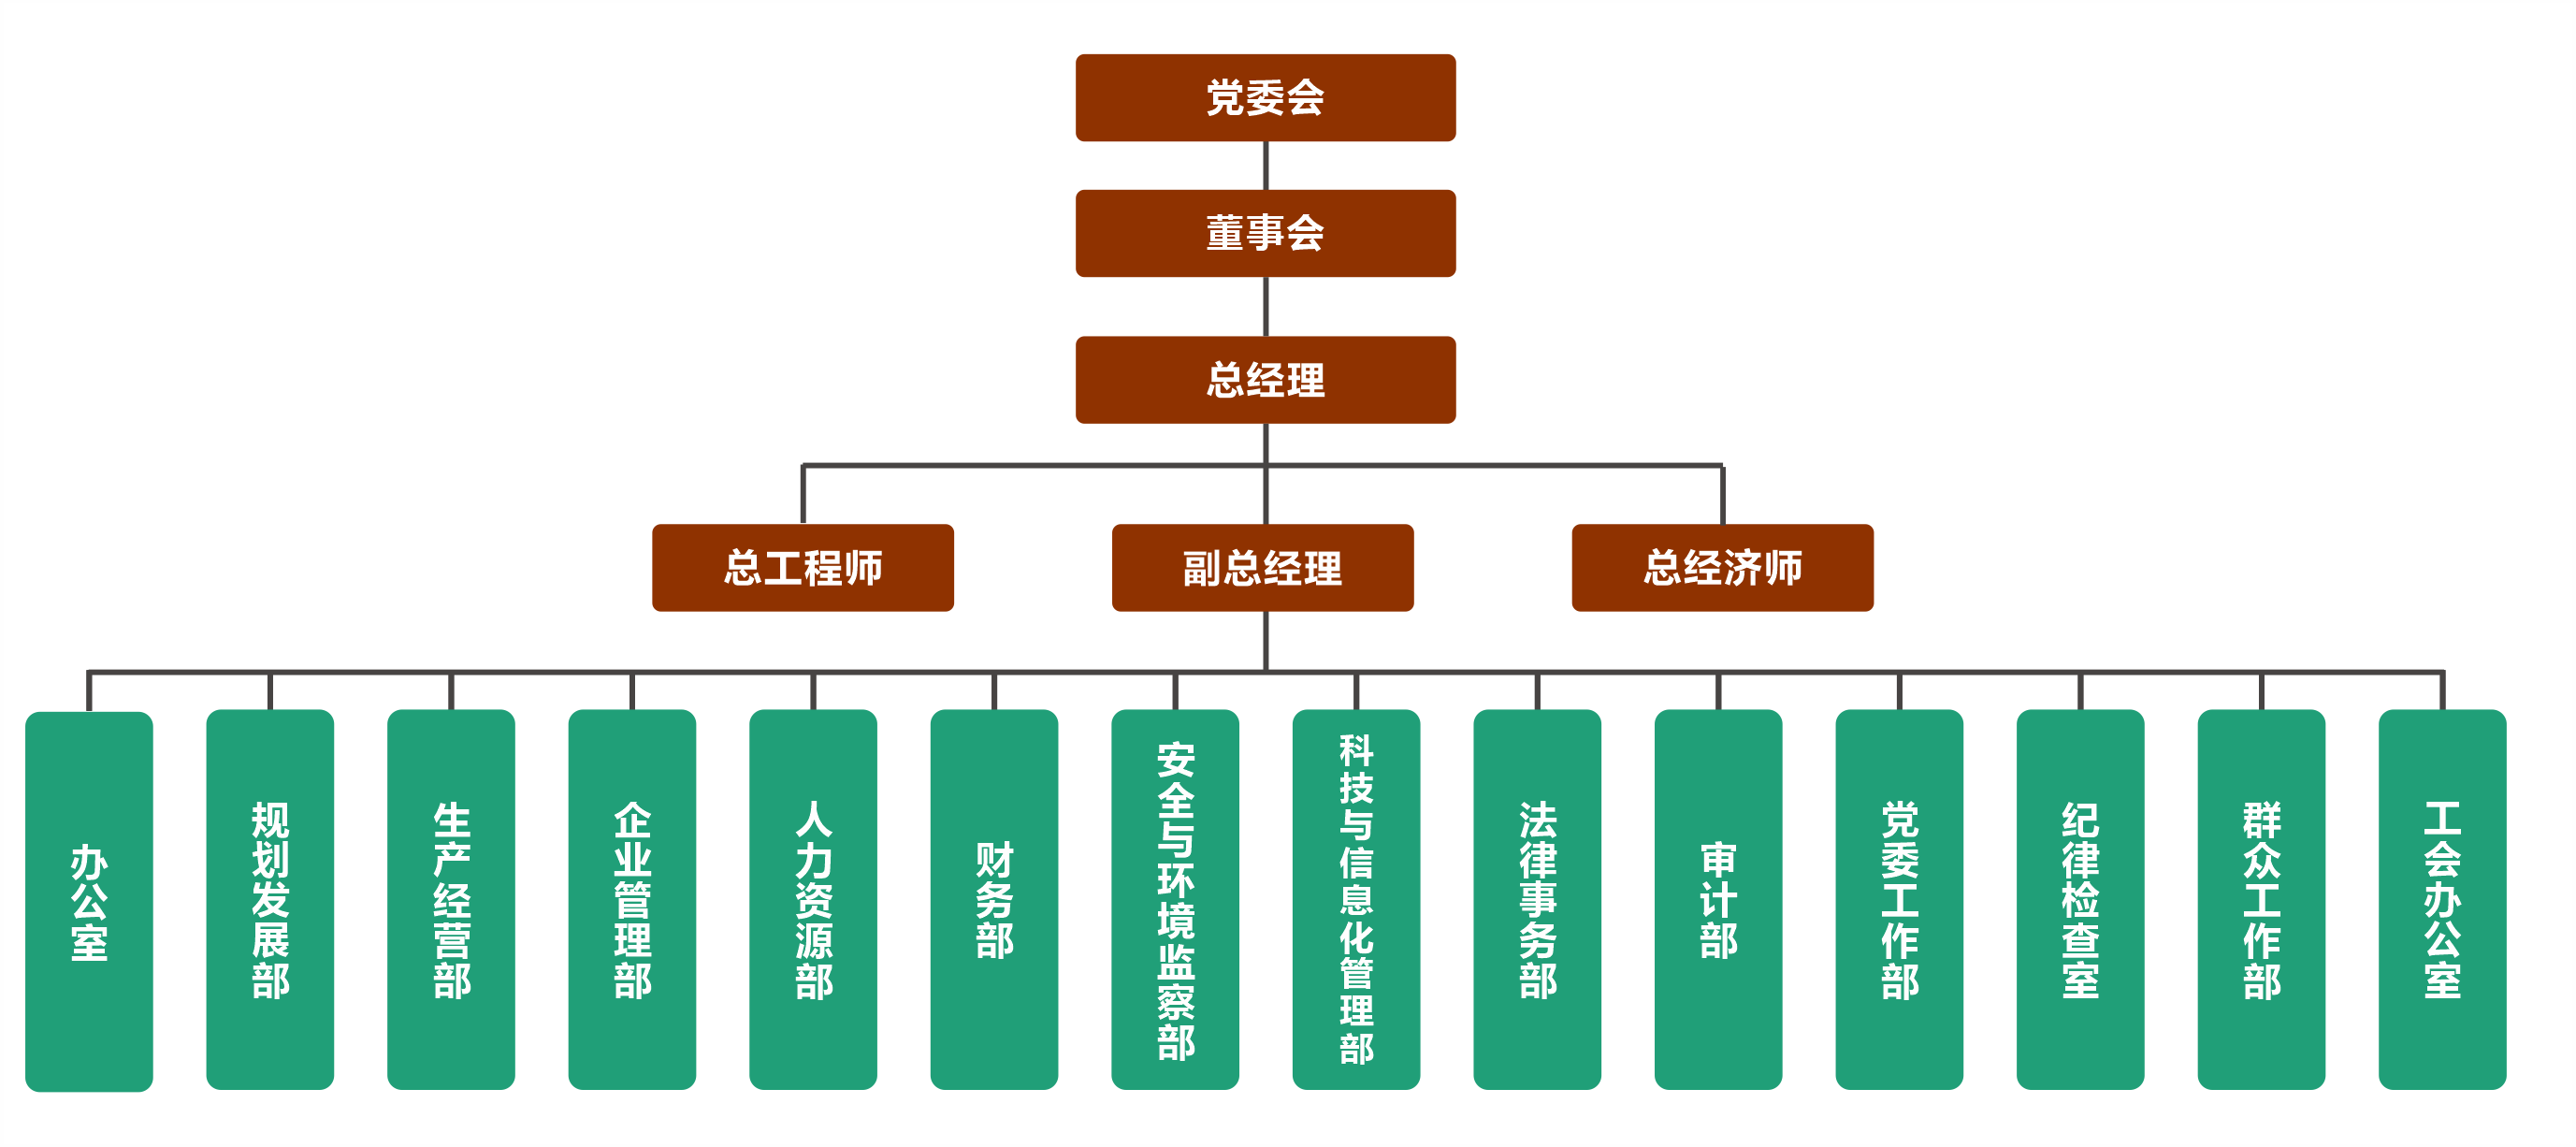 long8官网组织机构图20210225.png